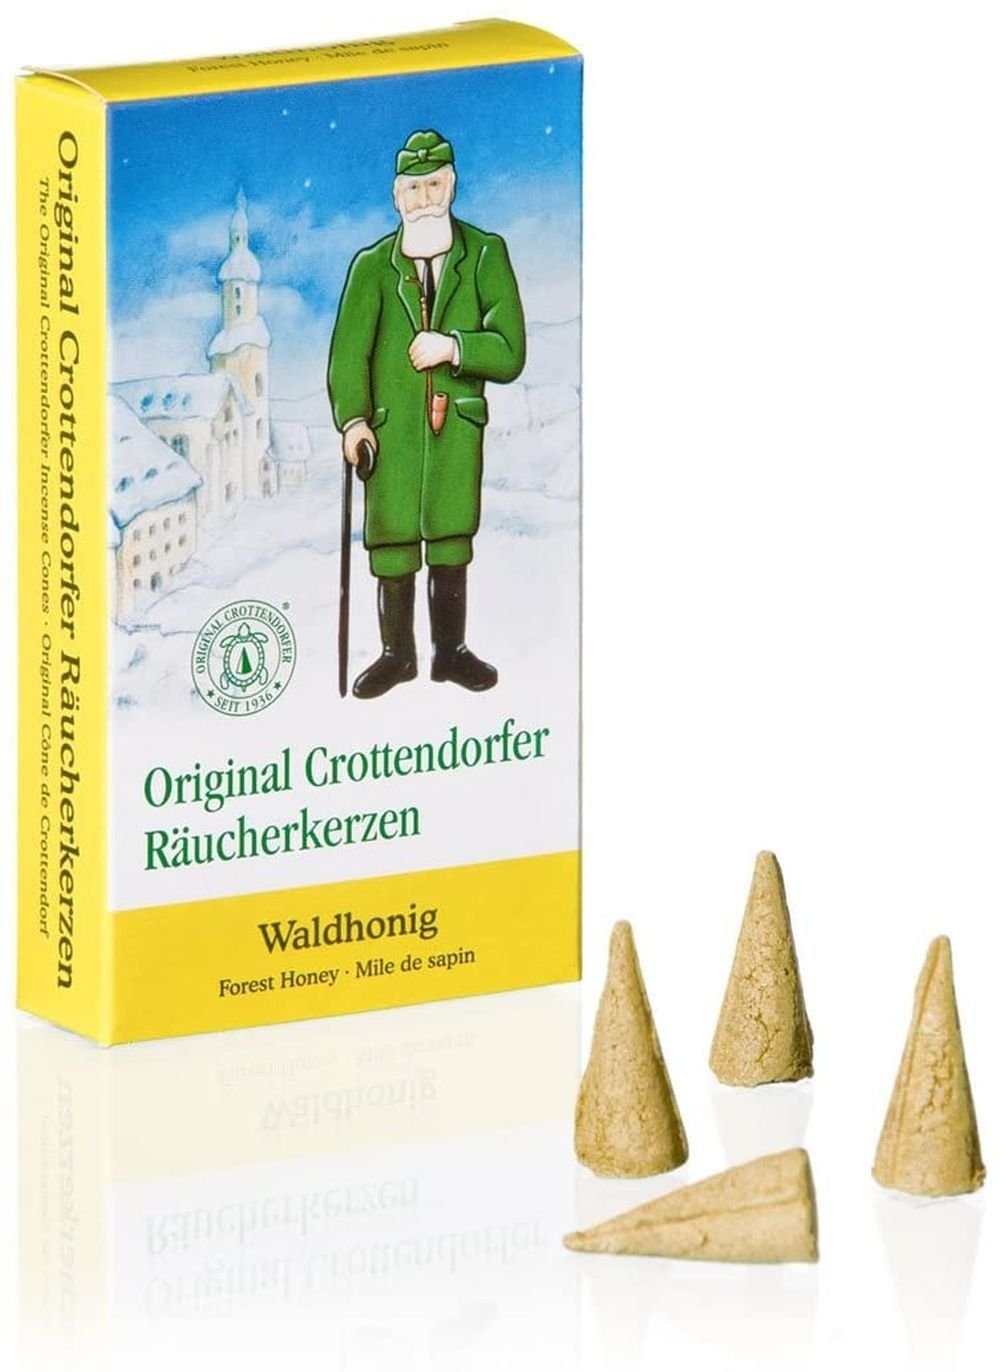 Crottendorfer Räuchermännchen 1 Räucherkerzen- Waldhonig 24er Packung - Päckchen